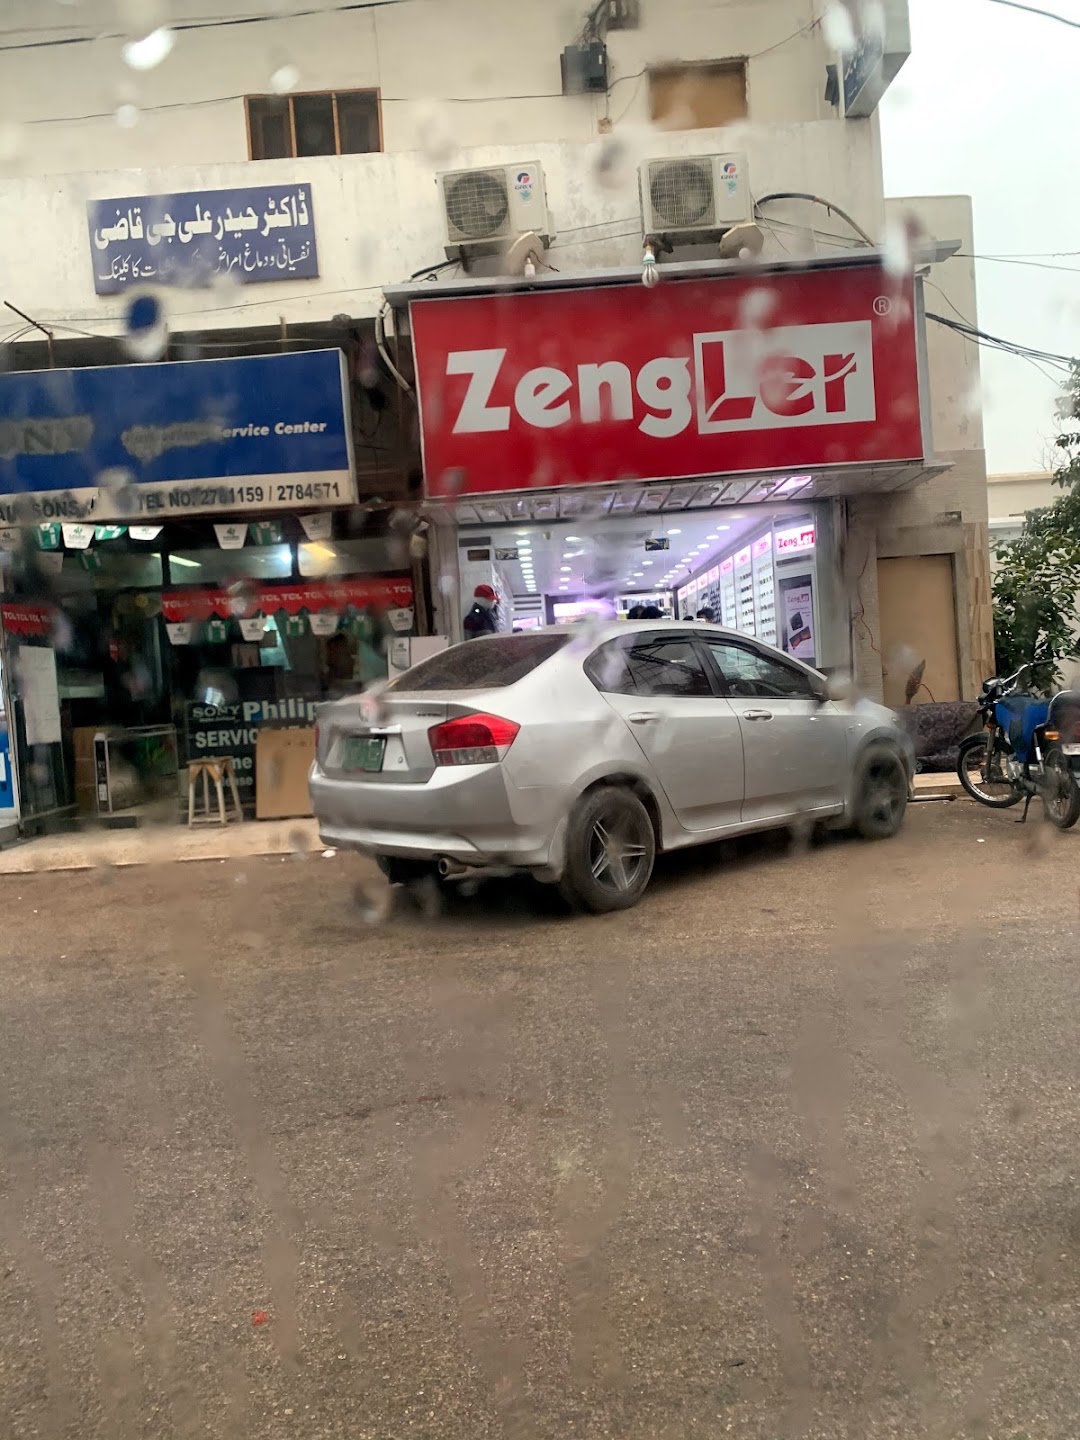 Zengler Menswear Shop